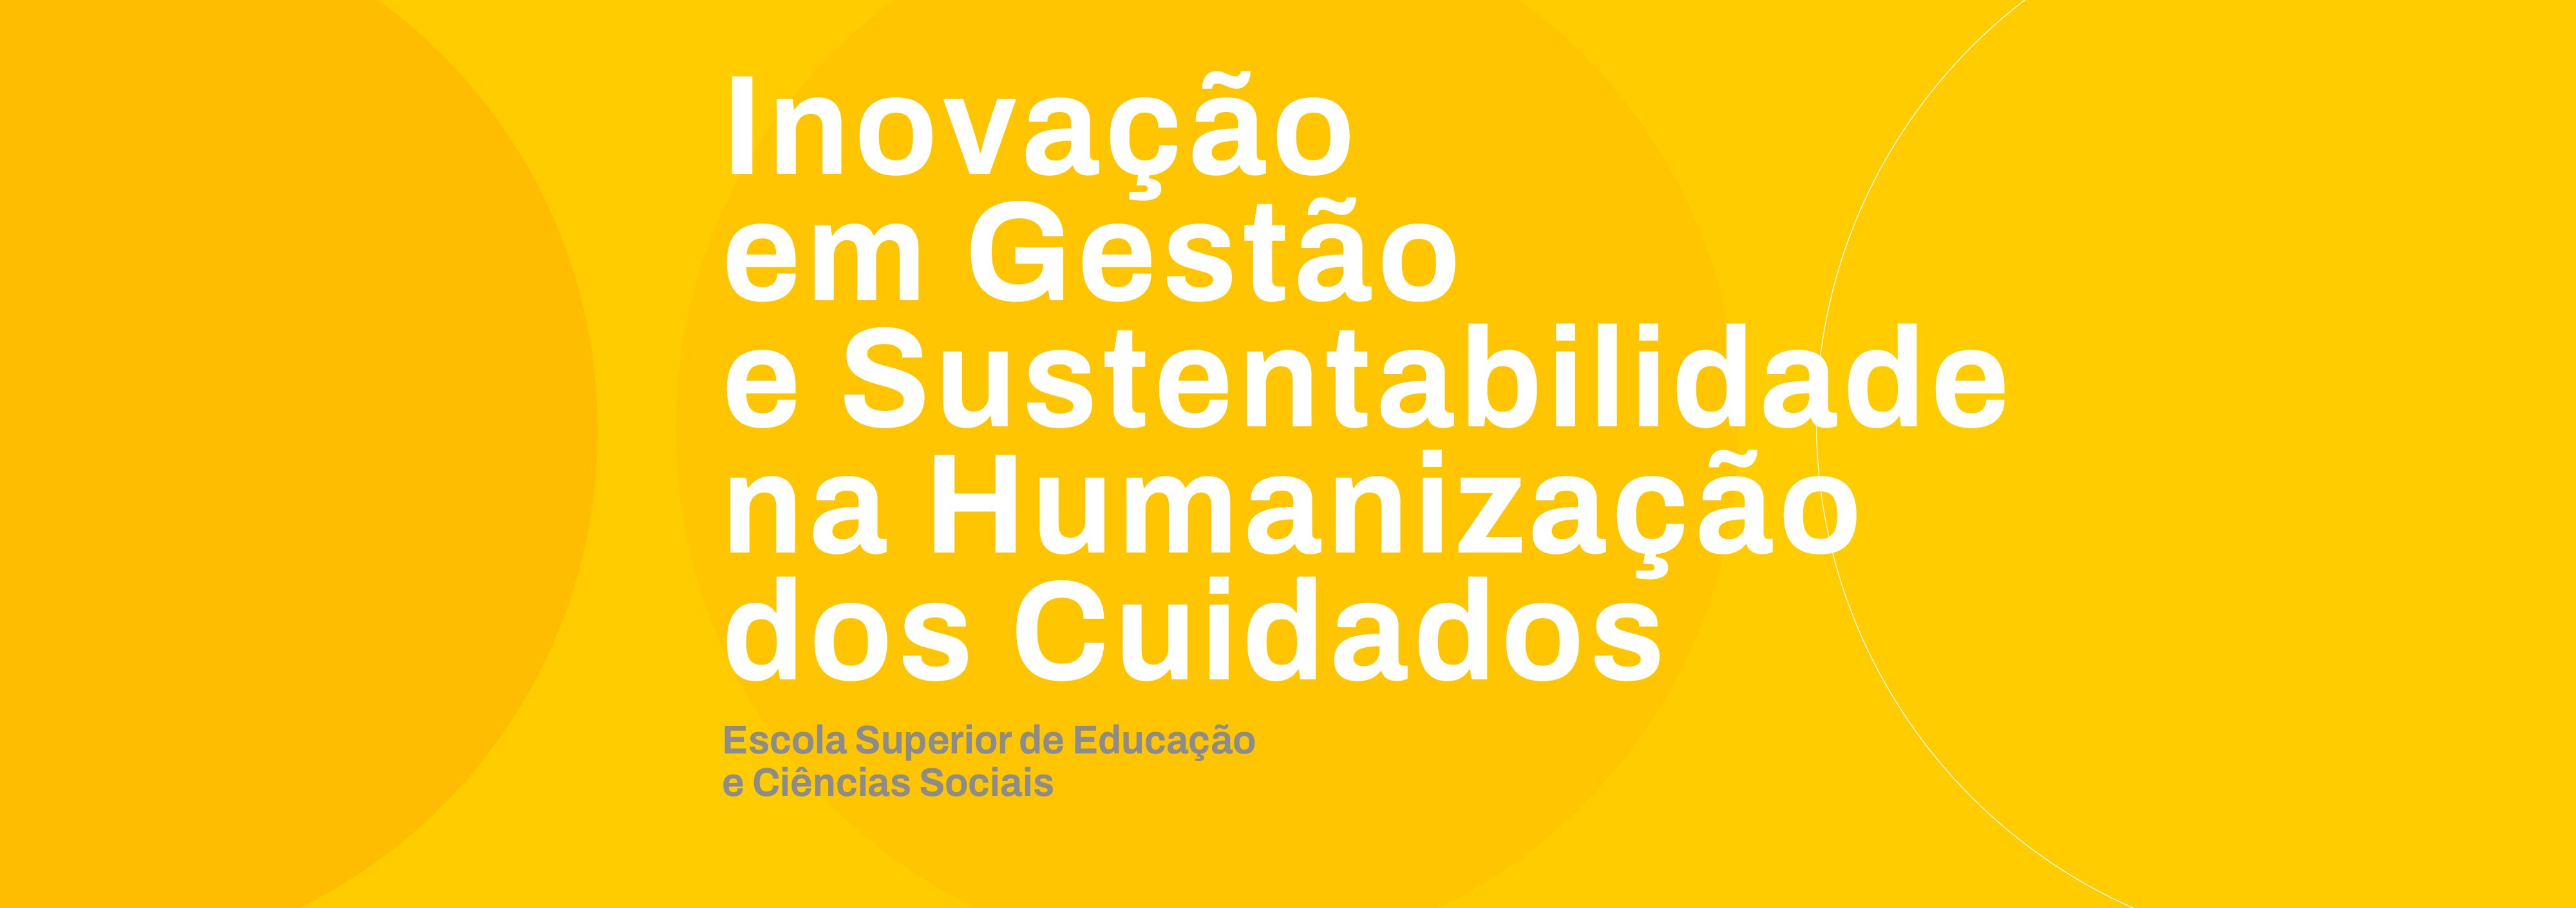 PG_2024_Inovacao_Gestao_Sustentabilidade_Humanizacao_Cuidados.jpg